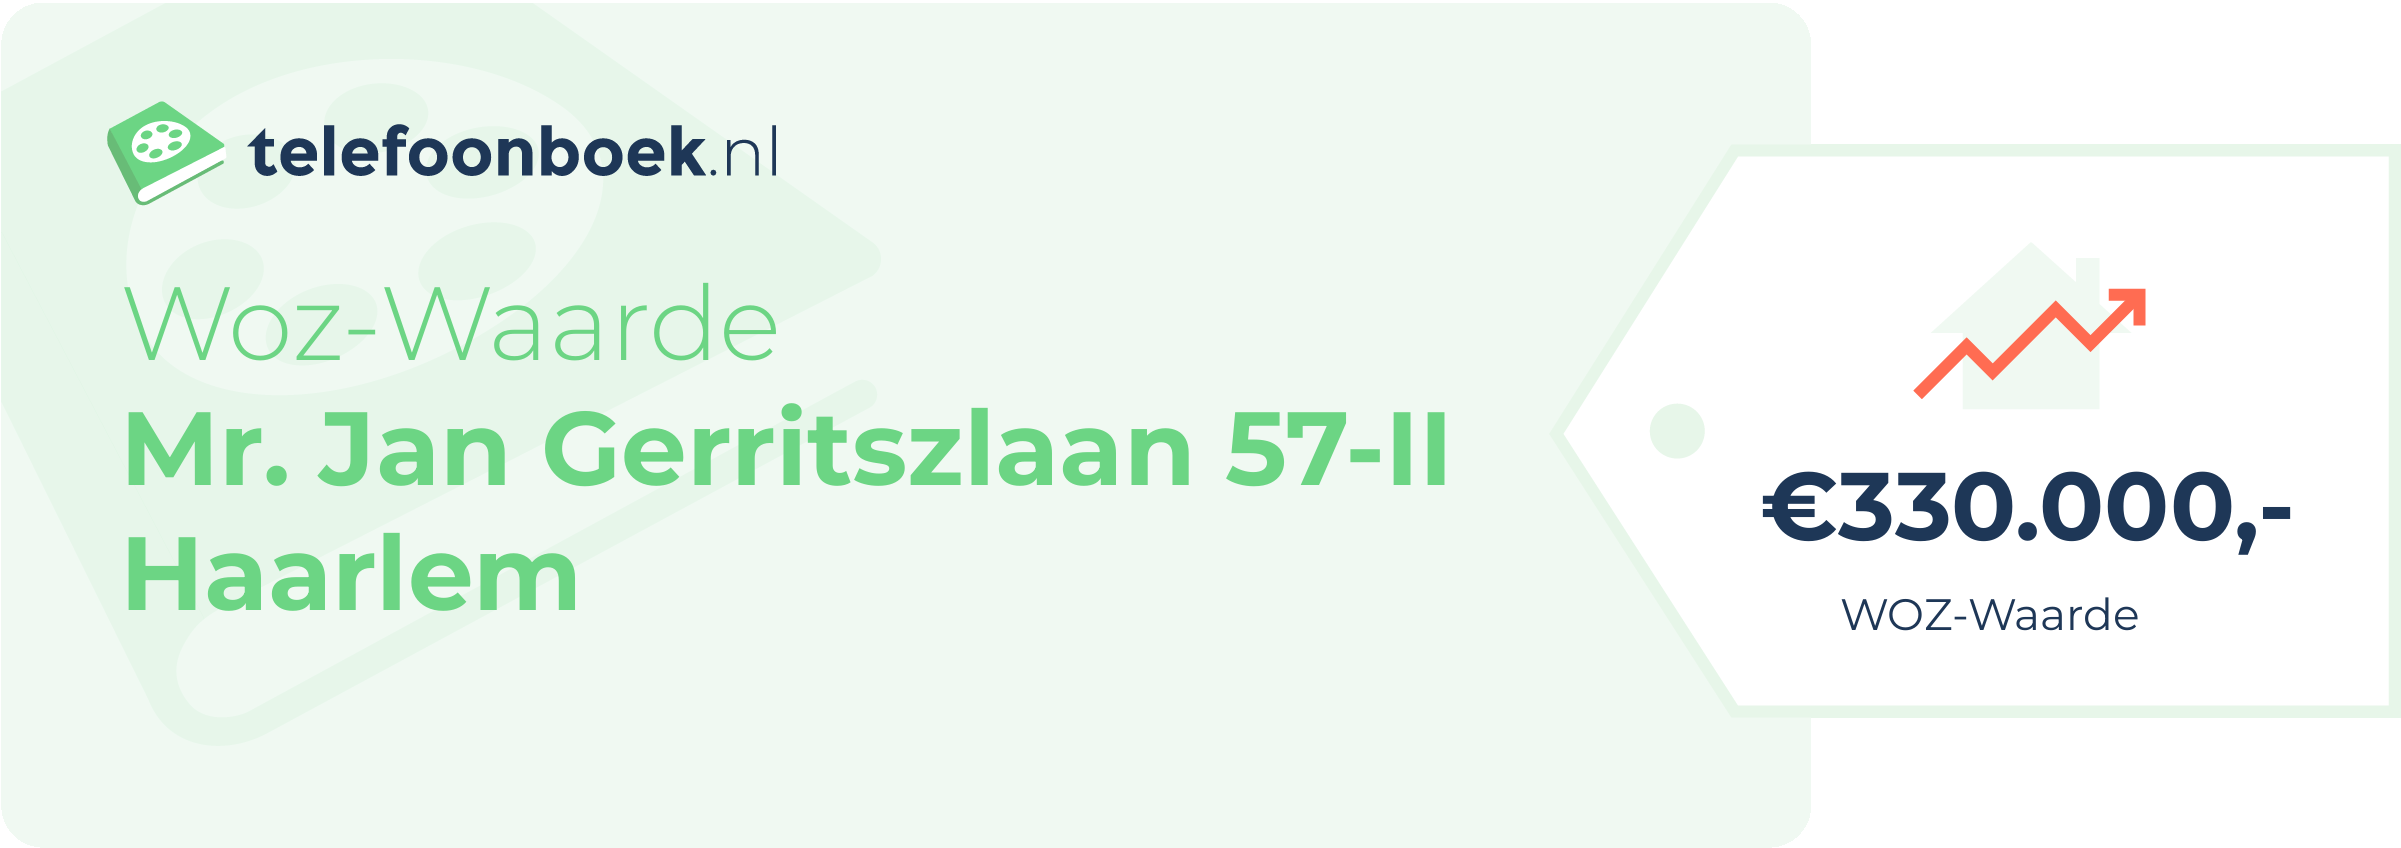 WOZ-waarde Mr. Jan Gerritszlaan 57-II Haarlem